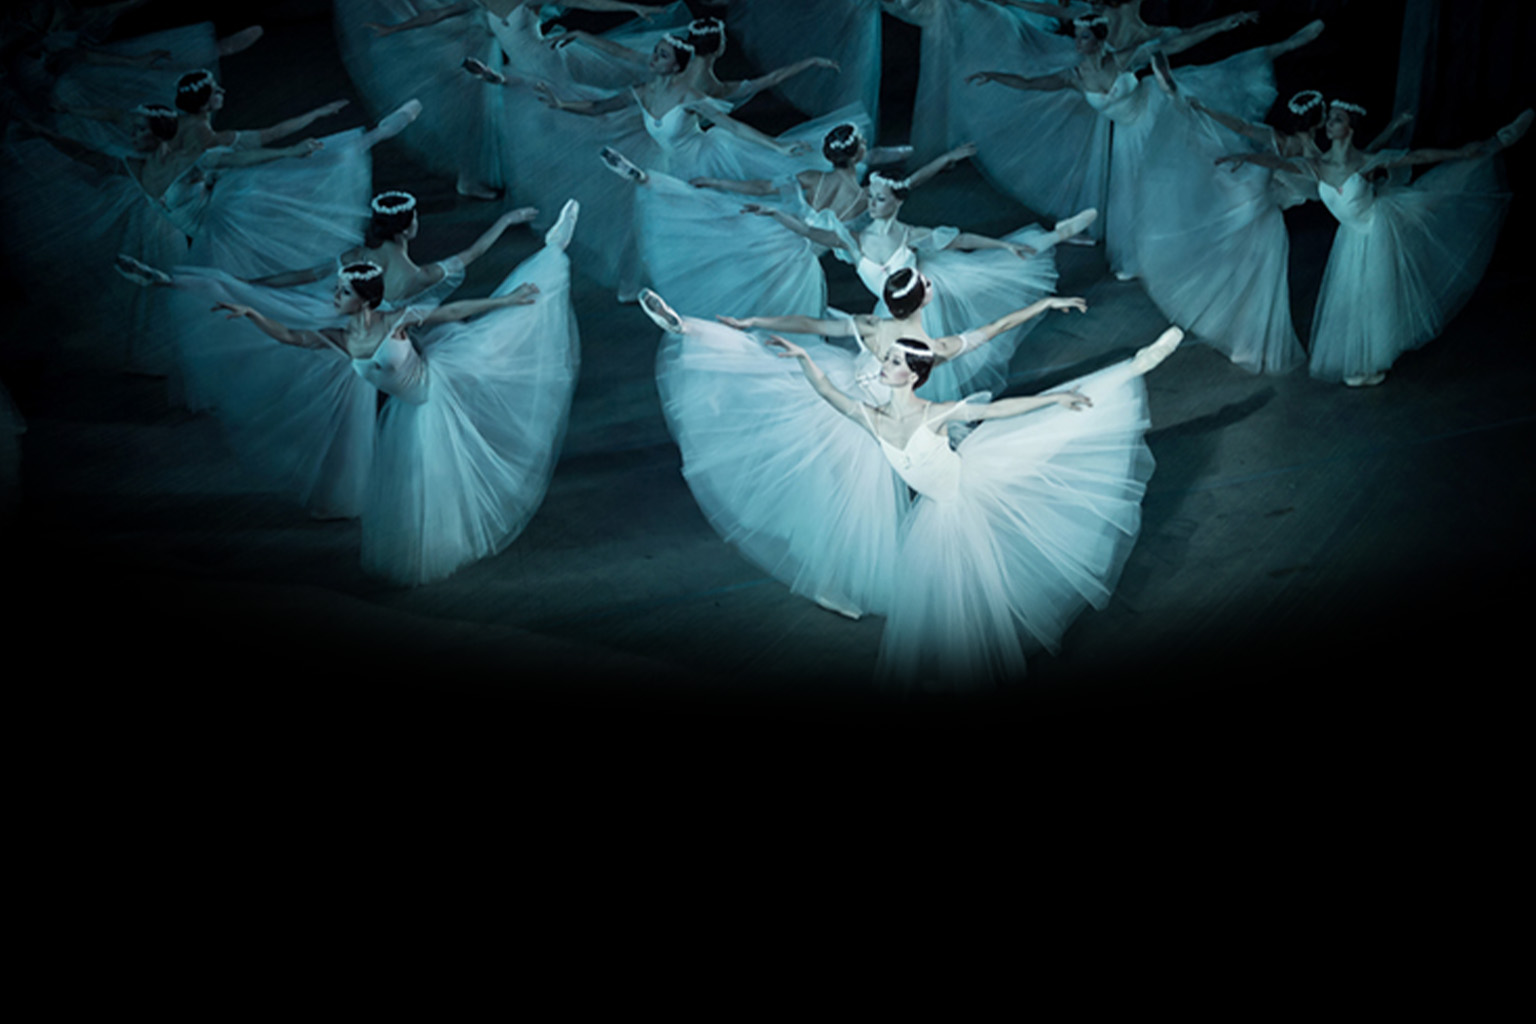 giselle theatre des champs elysees ukraine ballet in paris tickets